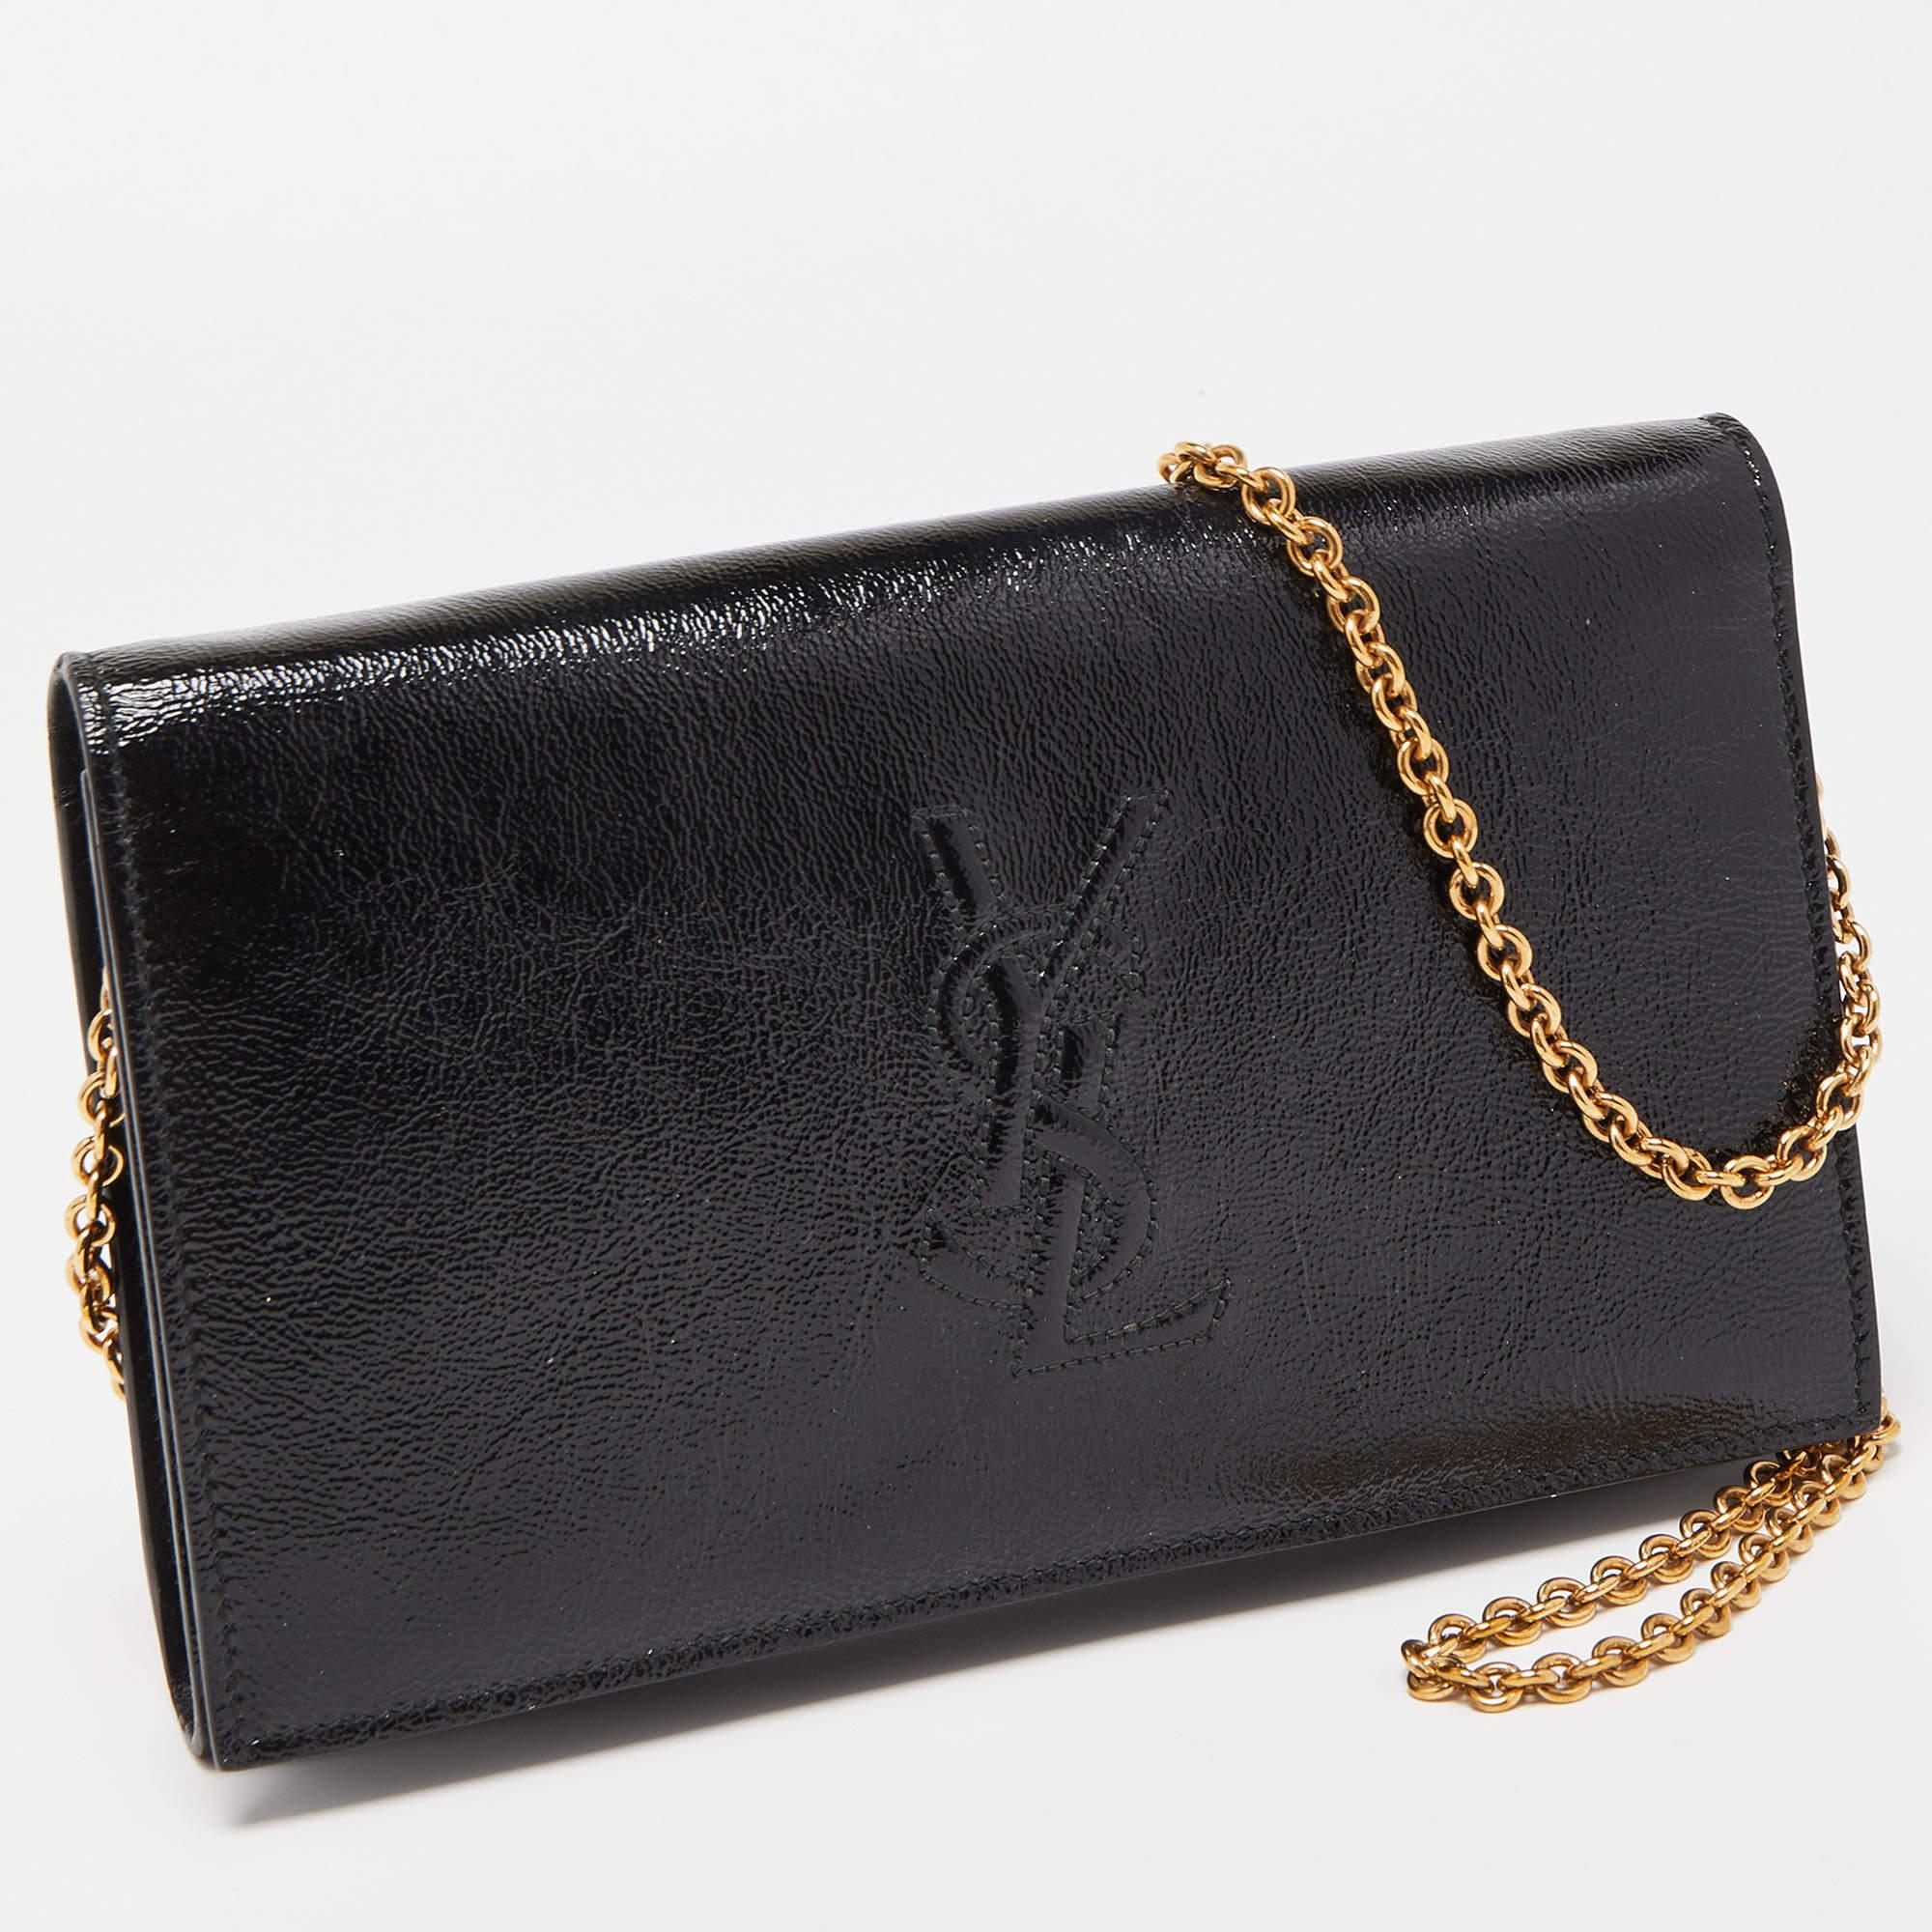 Yves Saint Laurent Black Patent Leather Belle De Jour Wallet on Chain 2